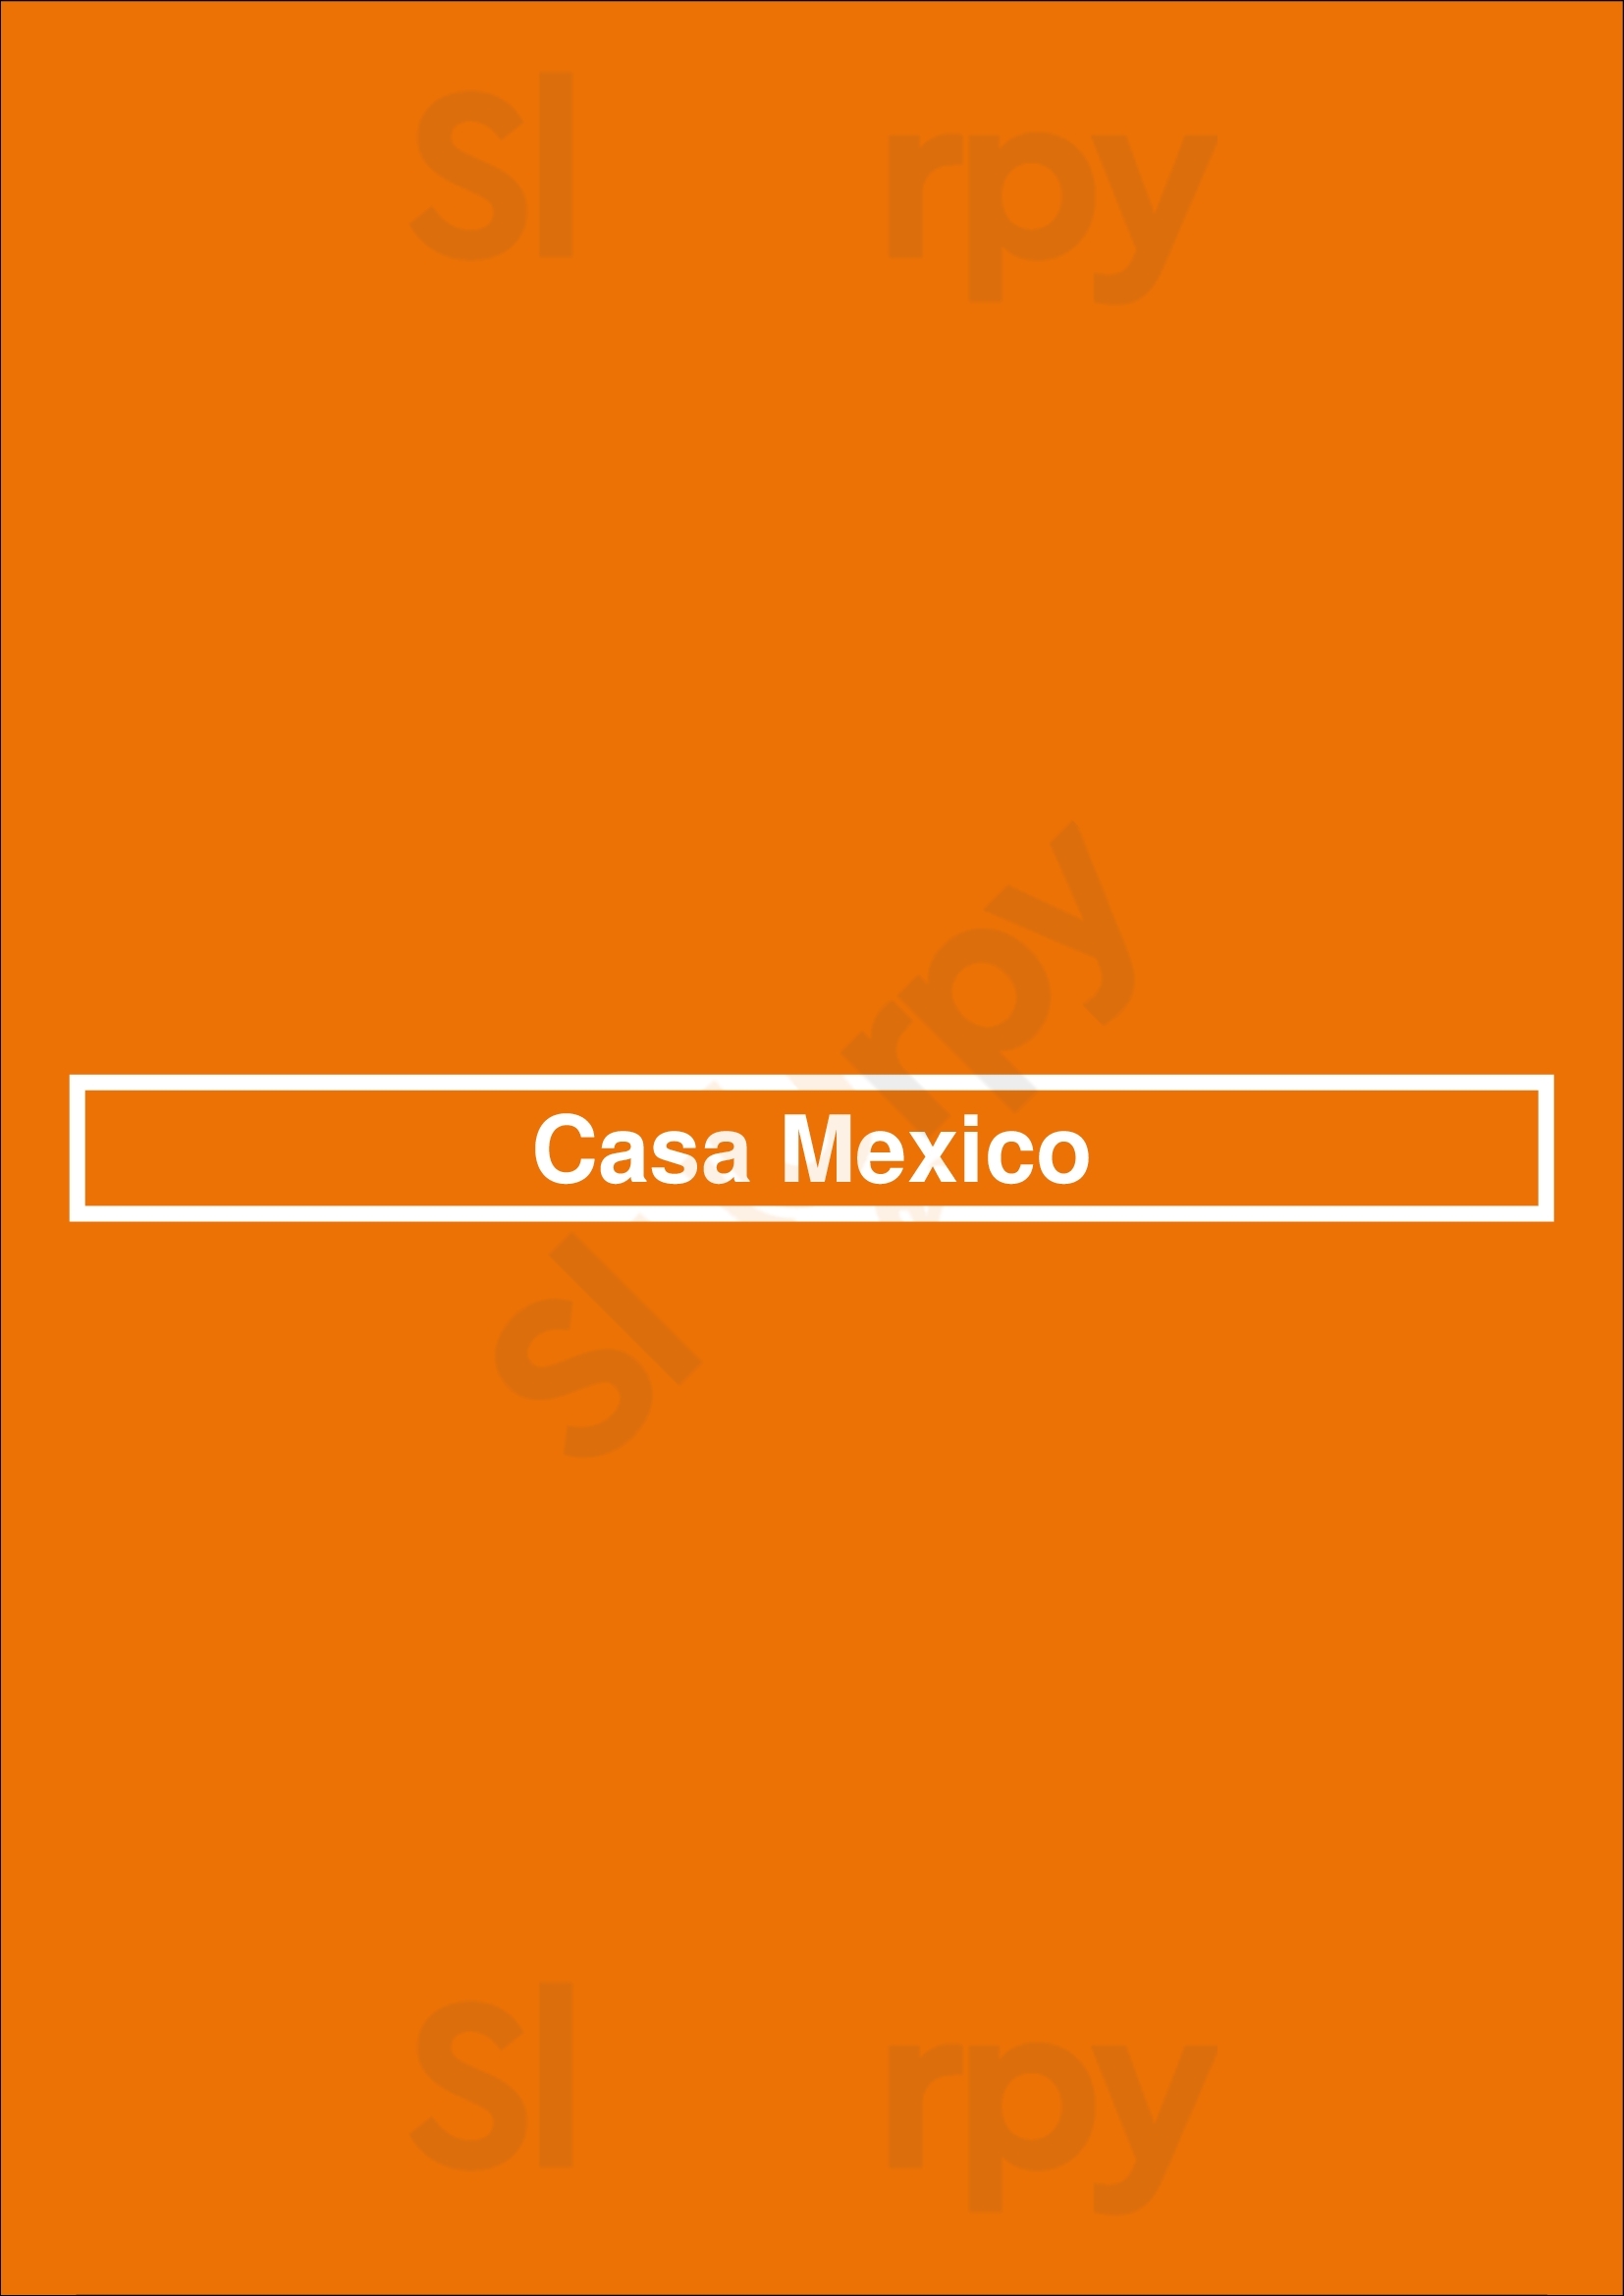 Casa Mexico Livermore Menu - 1